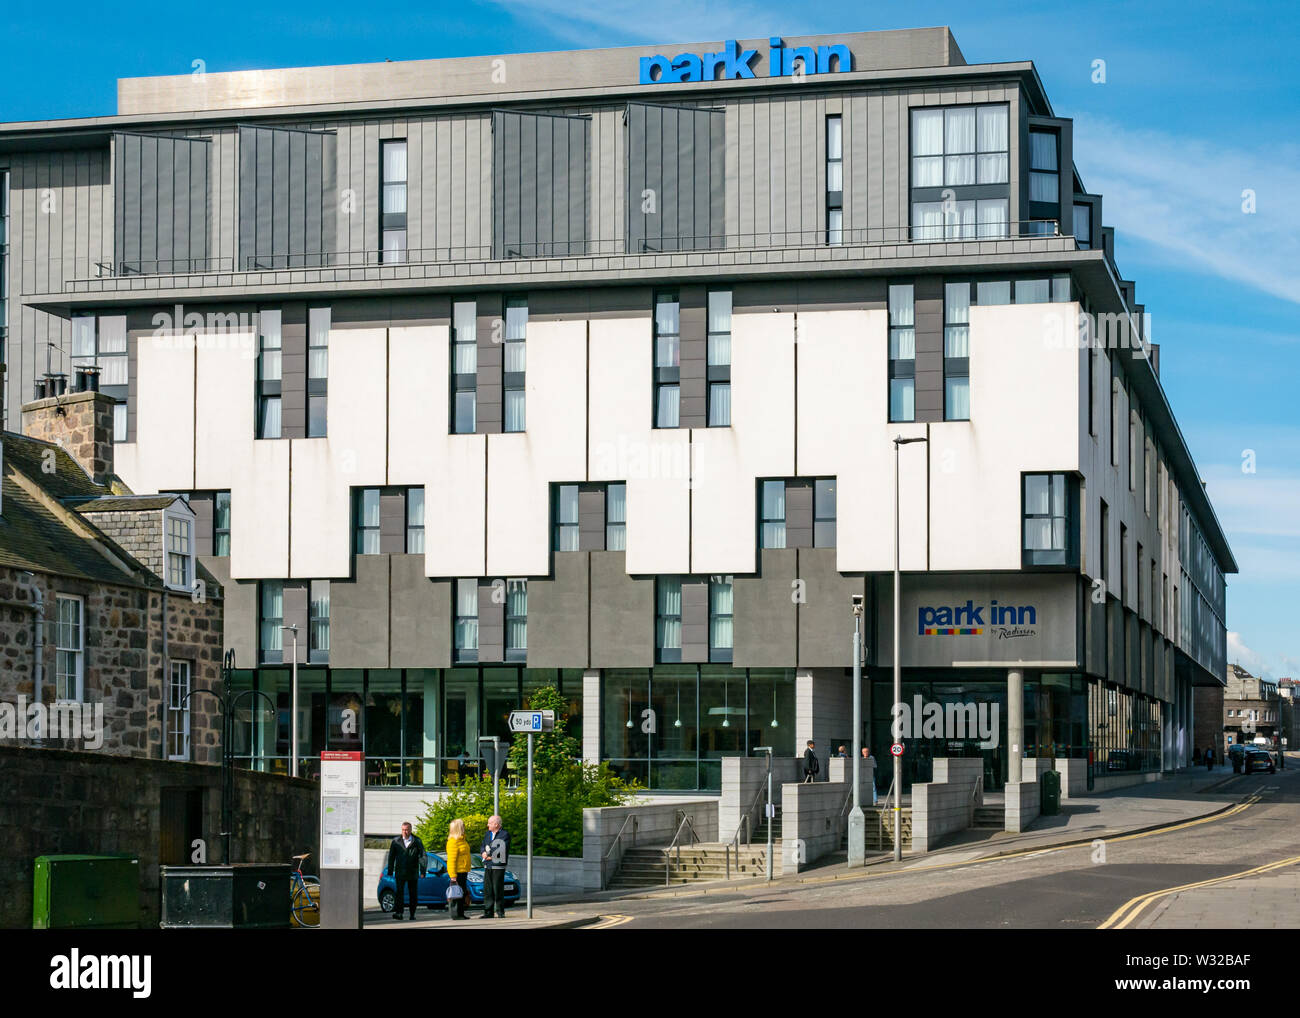 Modernes Hotel Radisson, Park Inn, Aberdeen, Schottland, Großbritannien Stockfoto